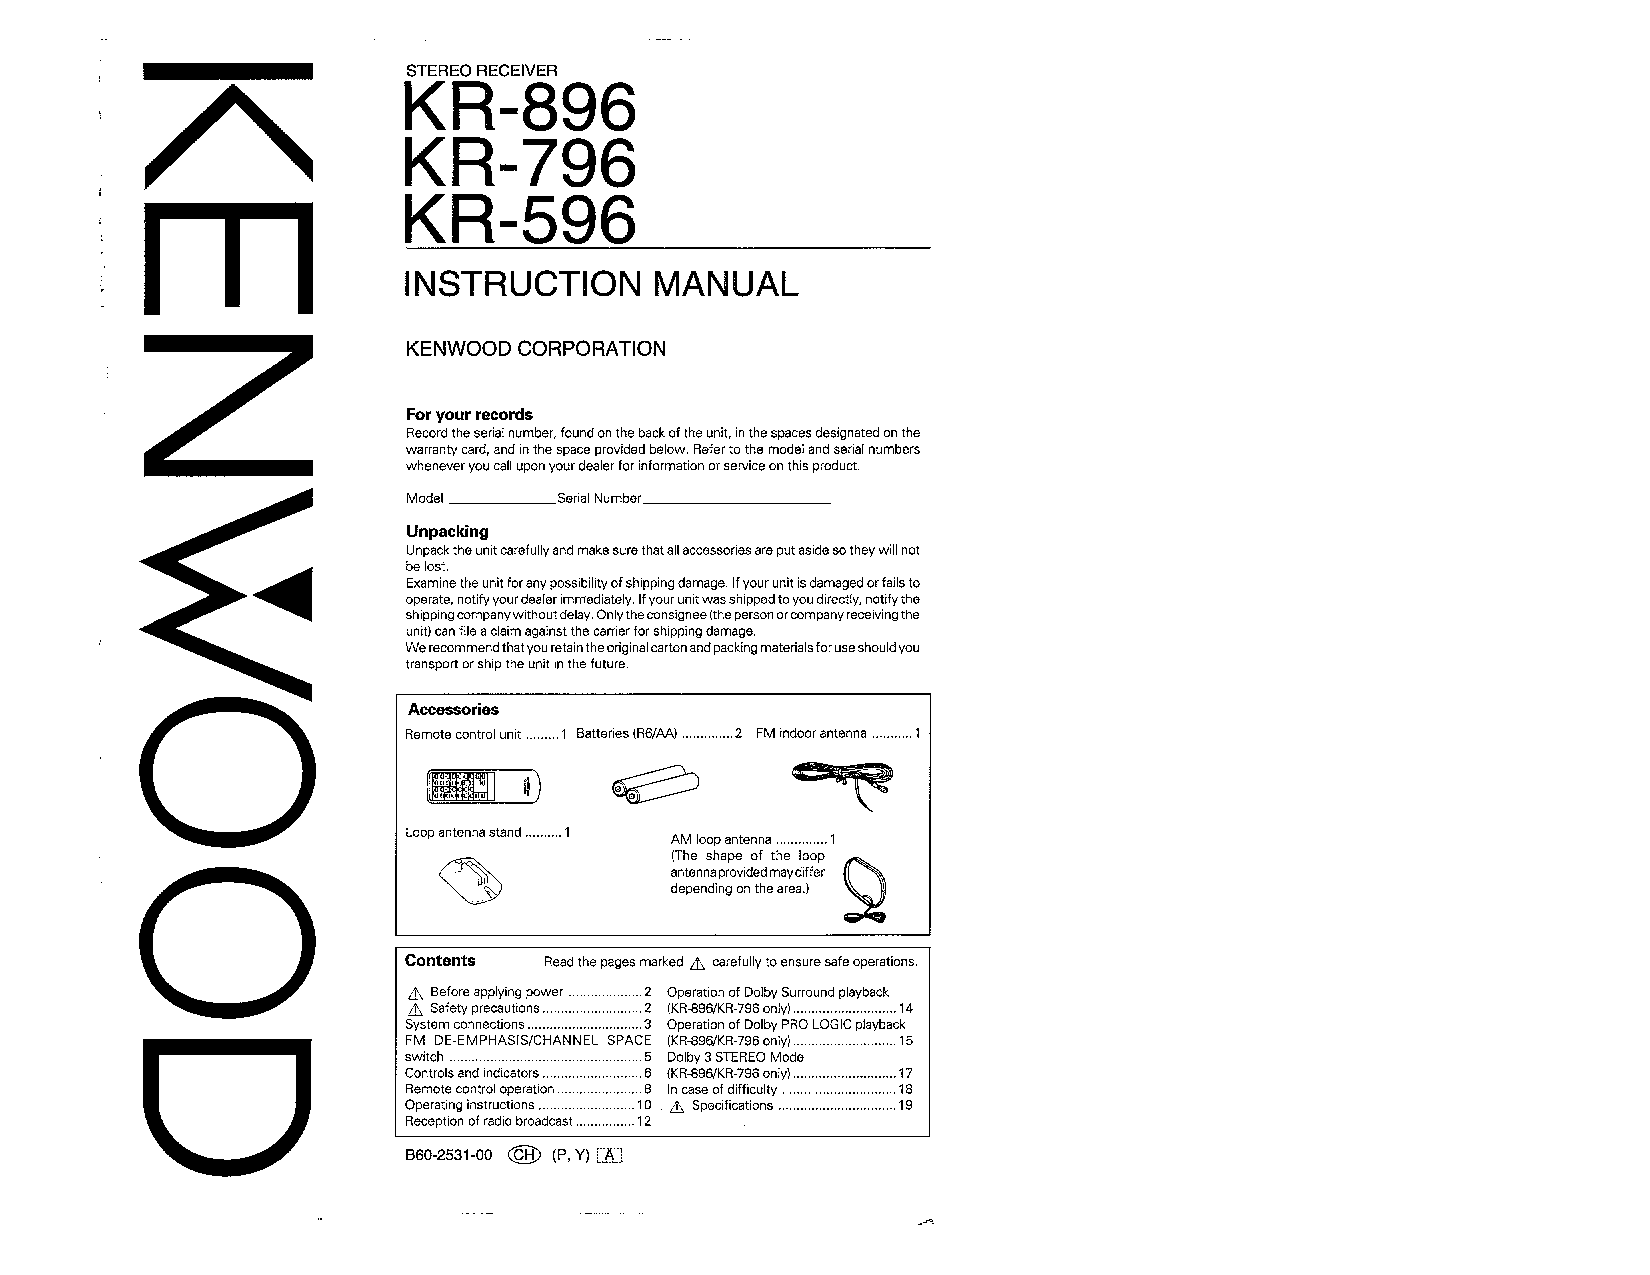 Kenwood KR-796, KR-596, KR-896 User Manual